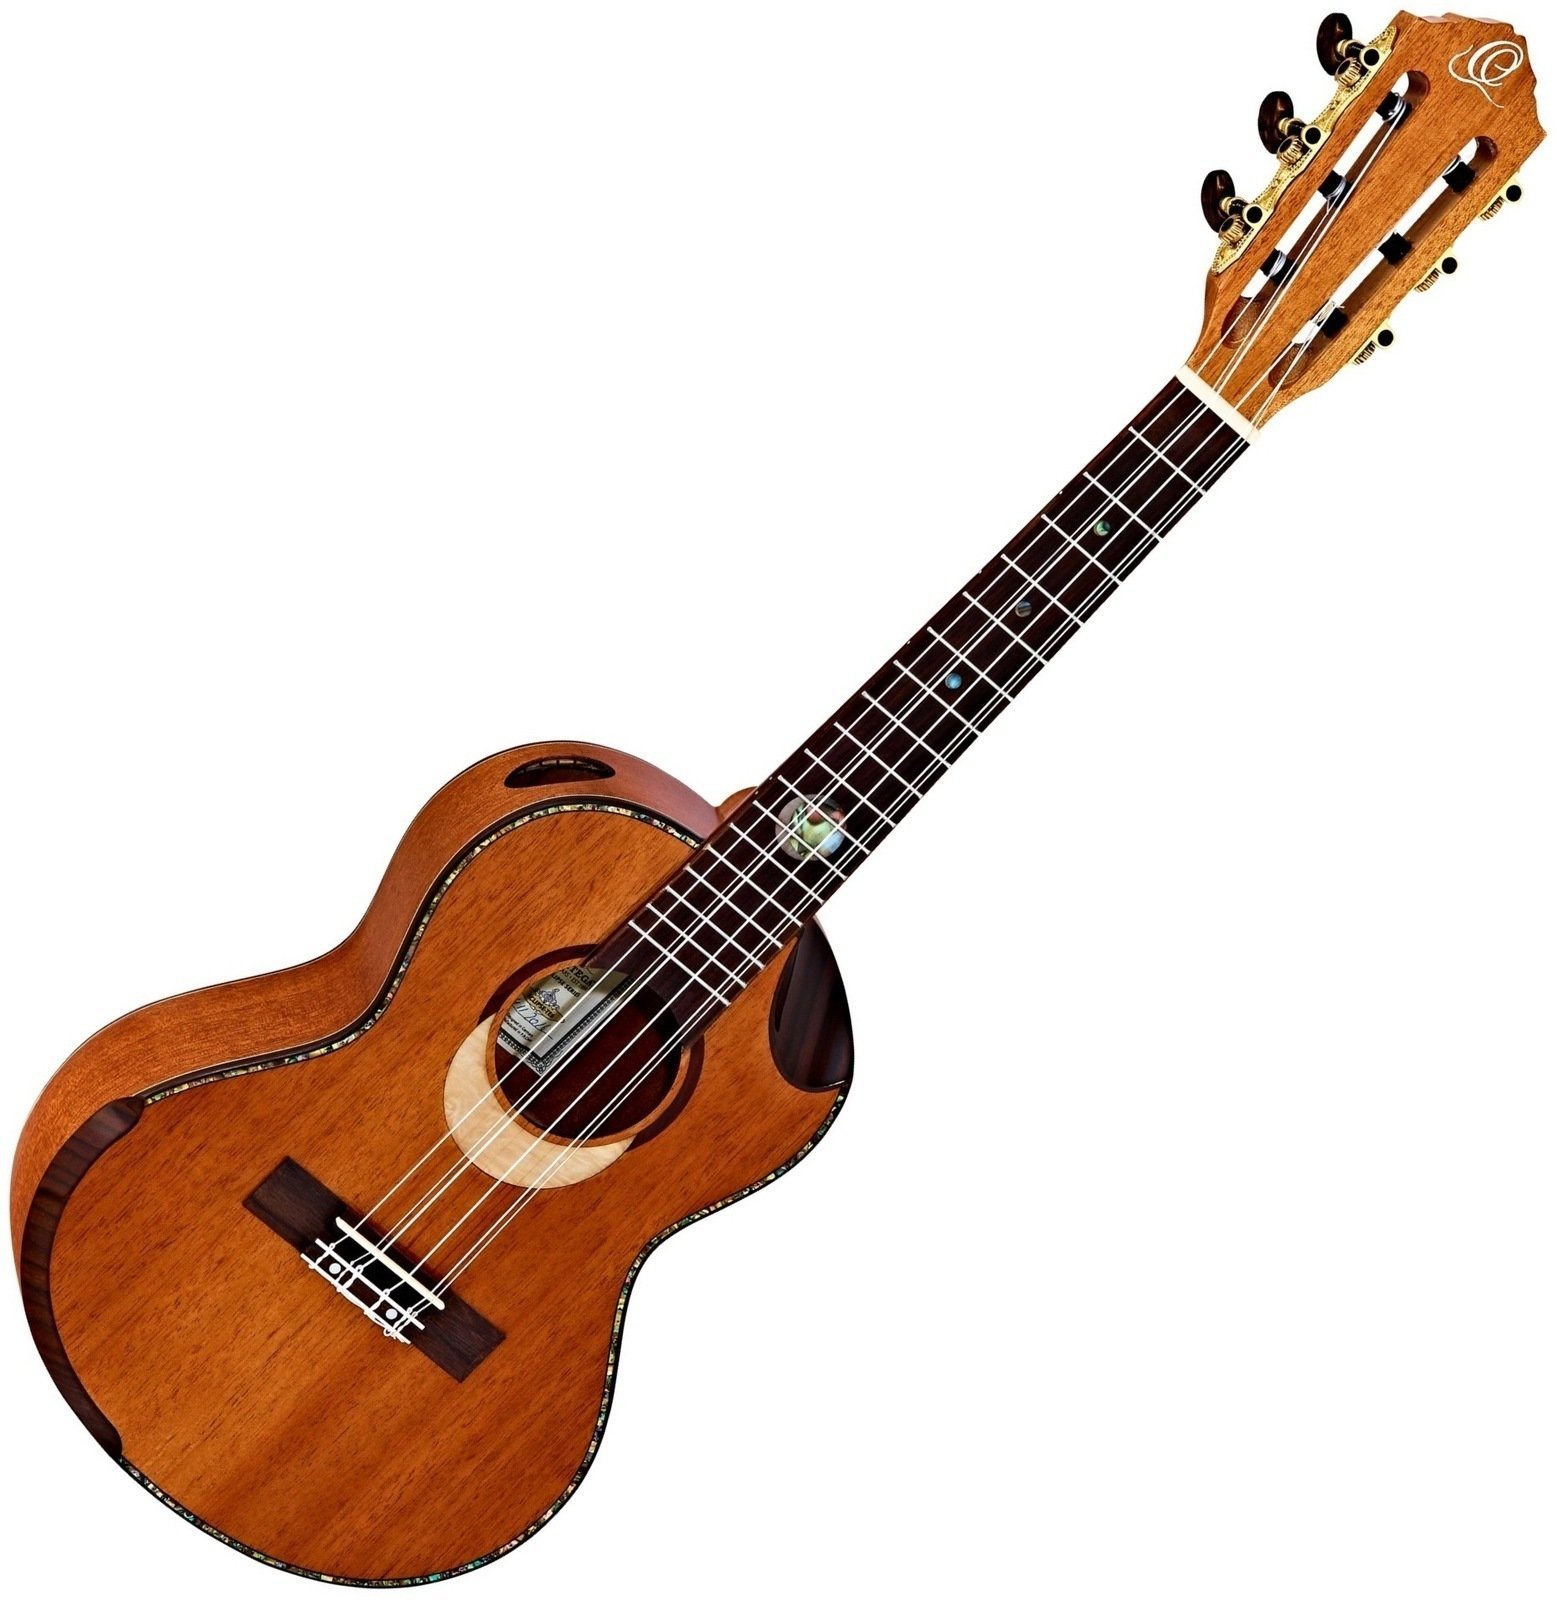 Tenor ukulele Ortega ECLIPSE Tenor ukulele Natural